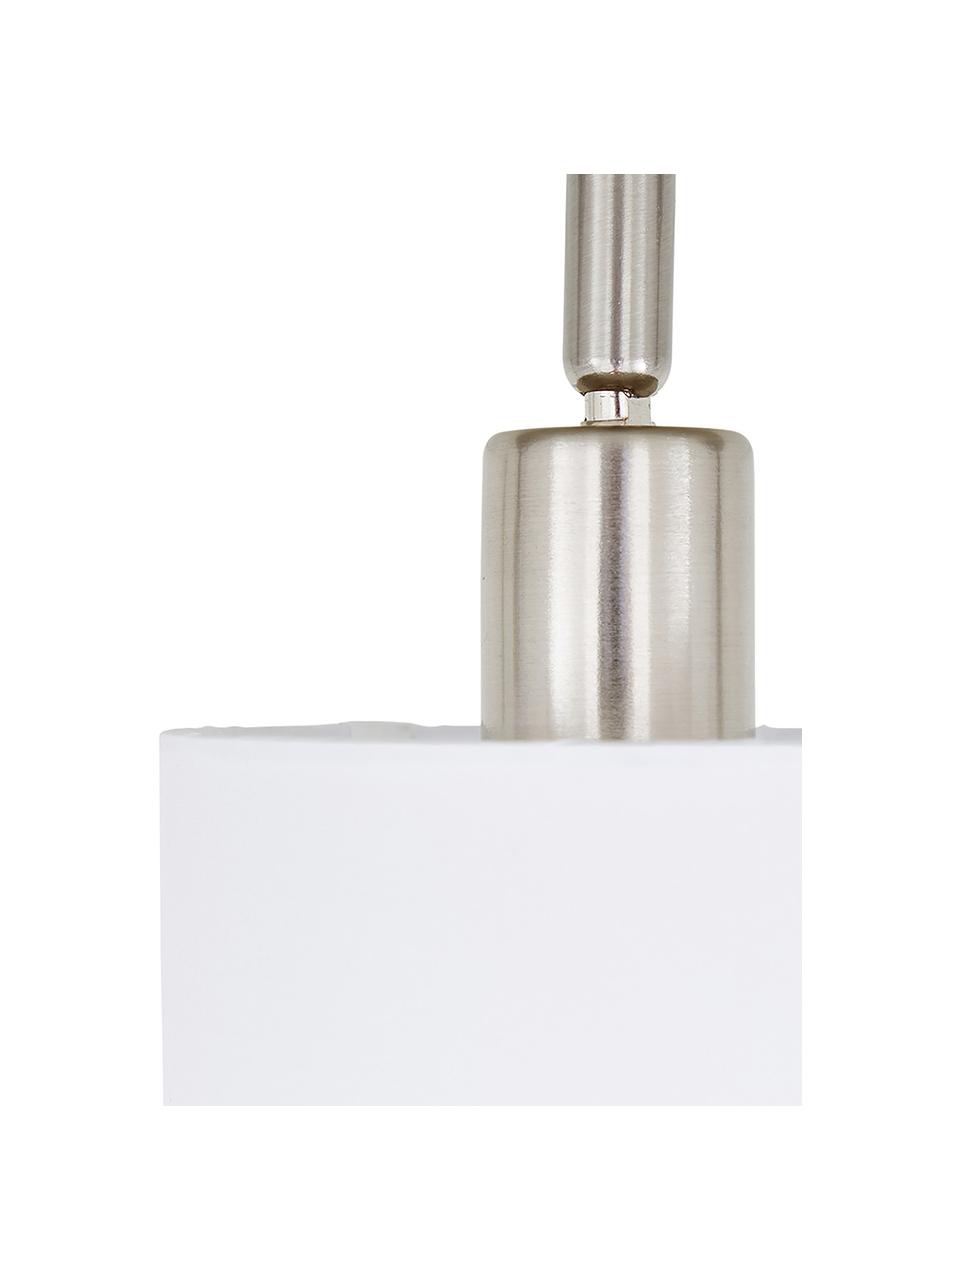 Klassischer Deckenstrahler Casper, Baldachin: Metall, vernickelt, Silberfarben, Weiß, B 56 x H 7 cm